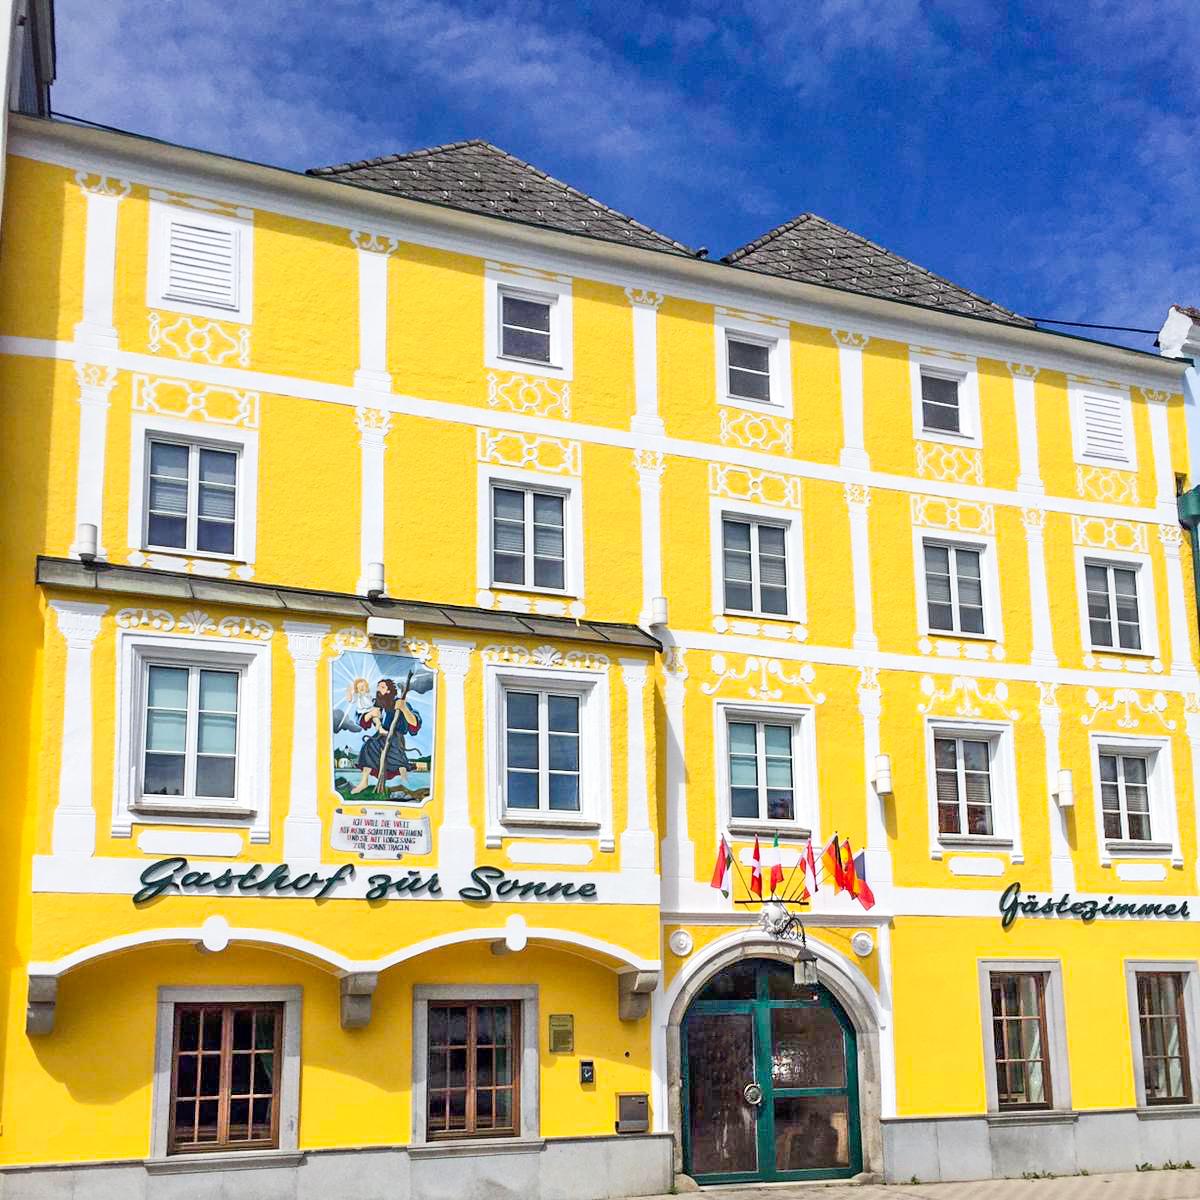 Restaurant "Sonne - Hotel | Gasthof | Restaurant" in Aschach an der Donau